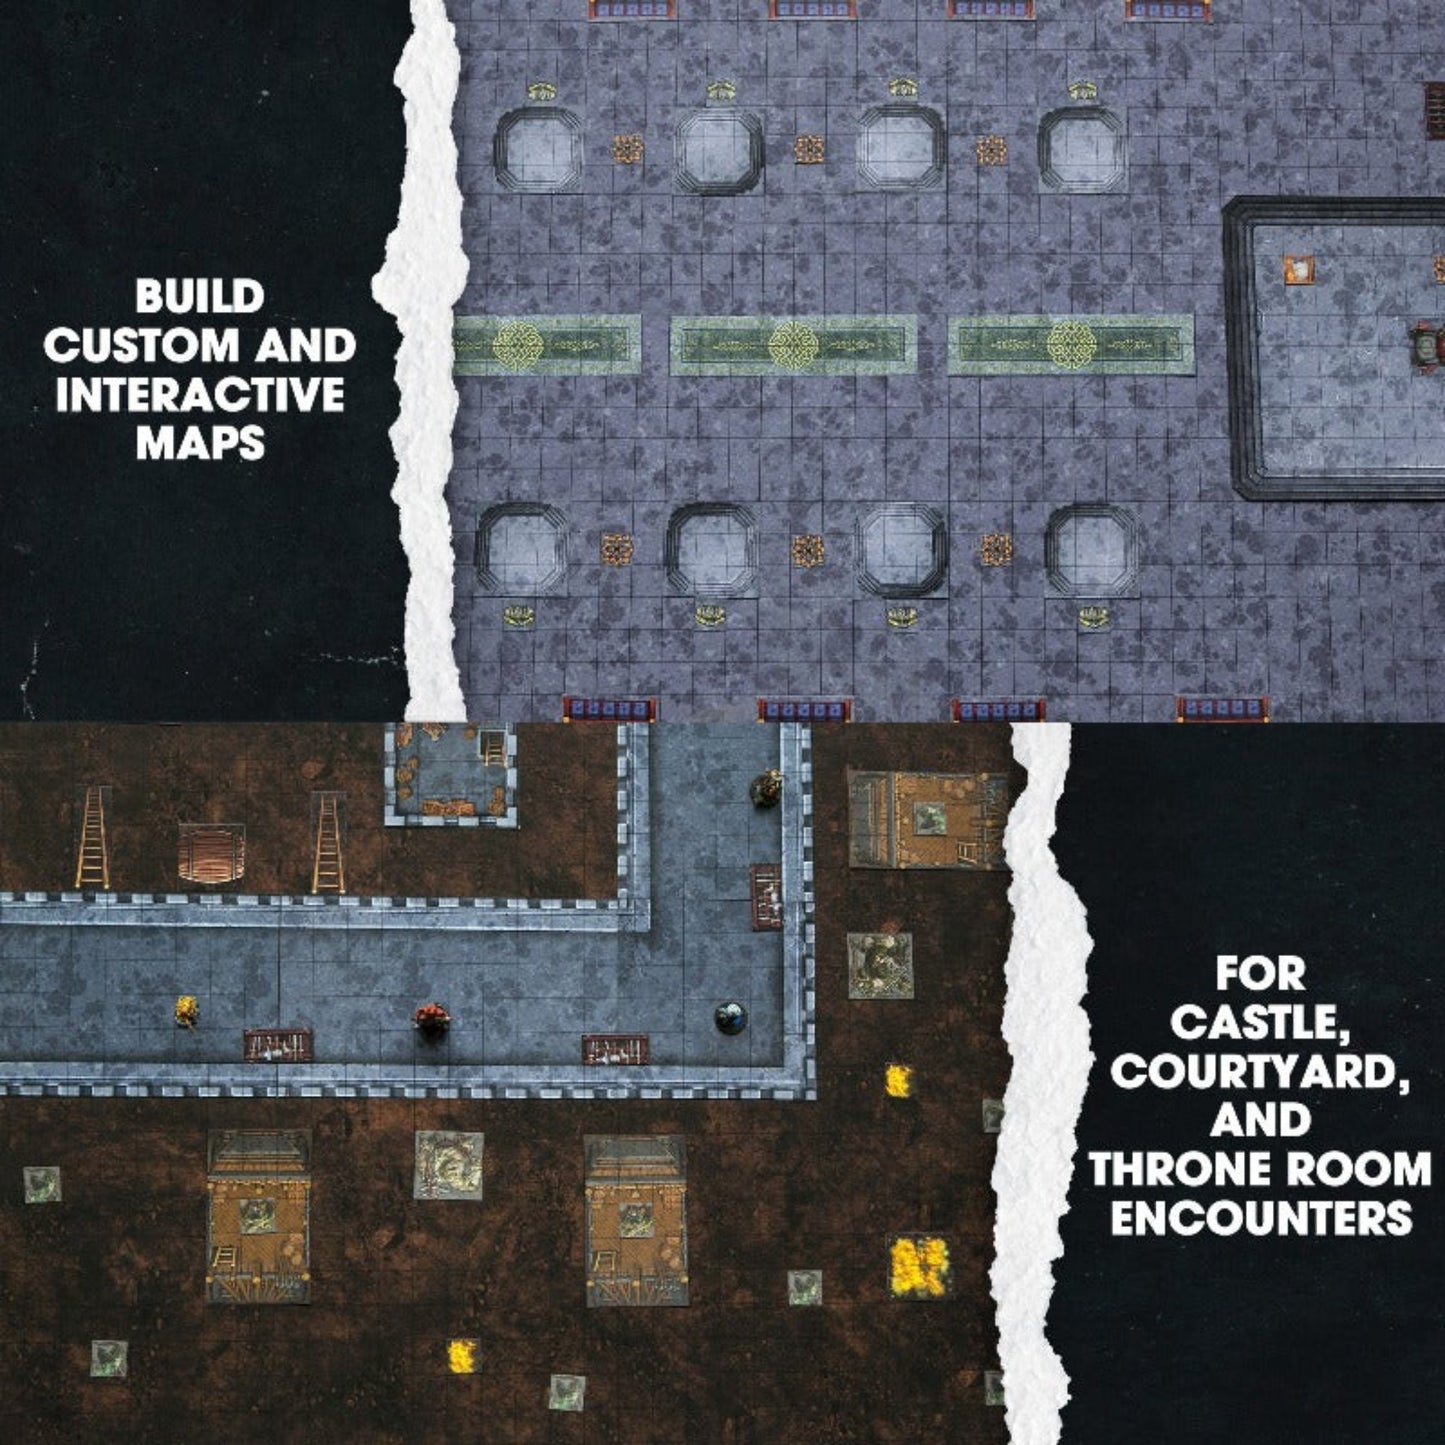 Dungeon Craft: Castles & Keeps | TTRPG Terrain Map Titles